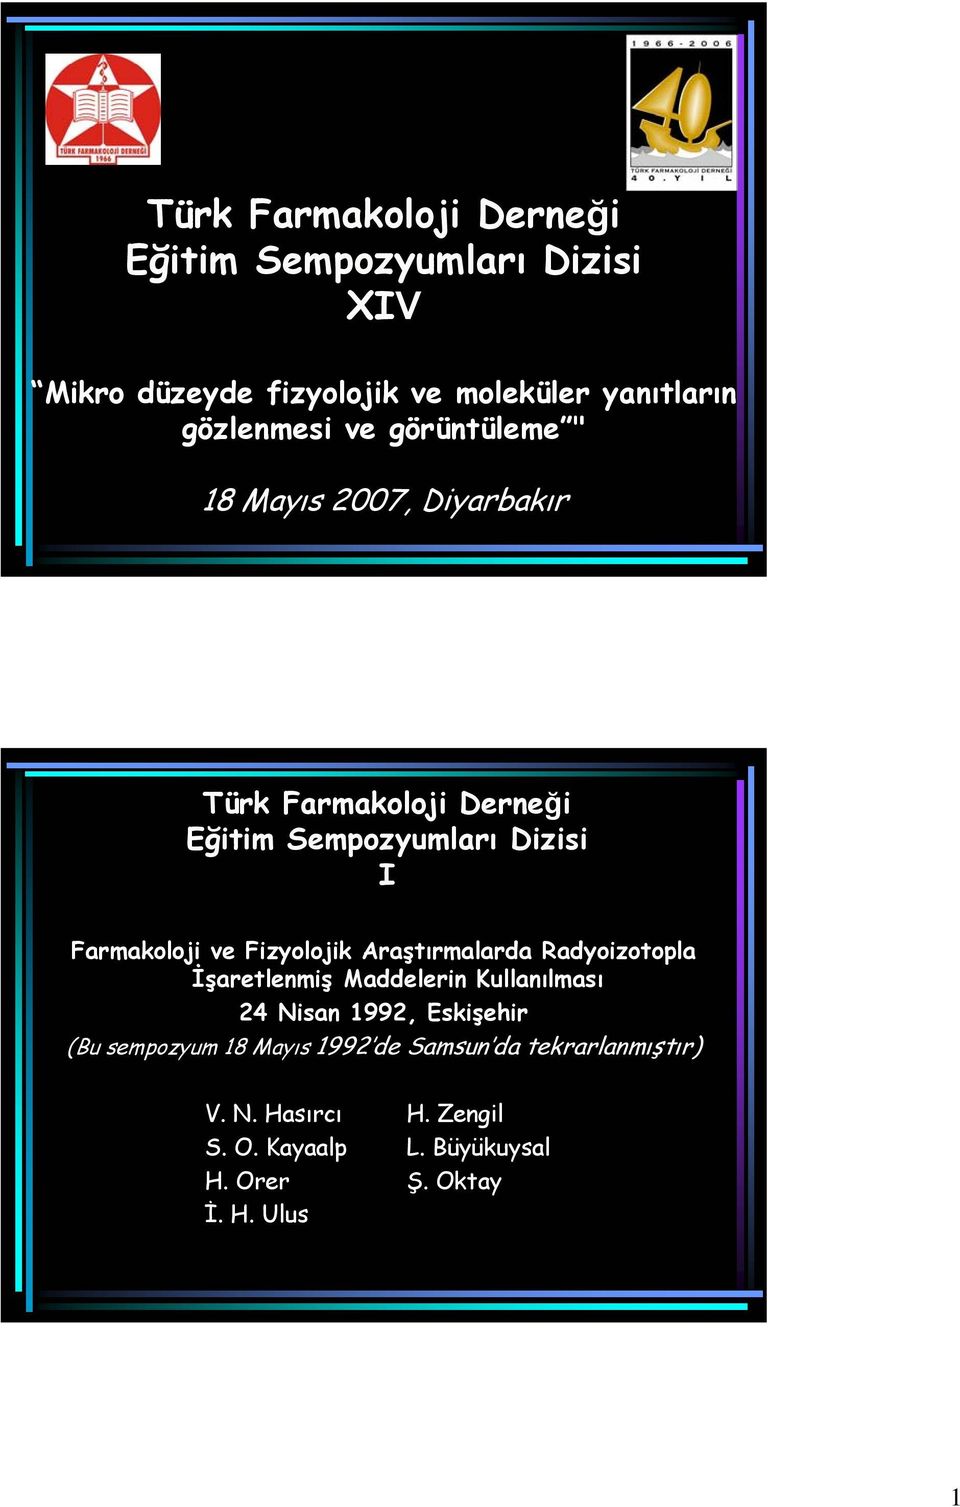 Maddeleri Kullaılması 24 Nisa 1992, Eskişehir (Bu sempozyum 18 Mayıs 1992 de Samsu da